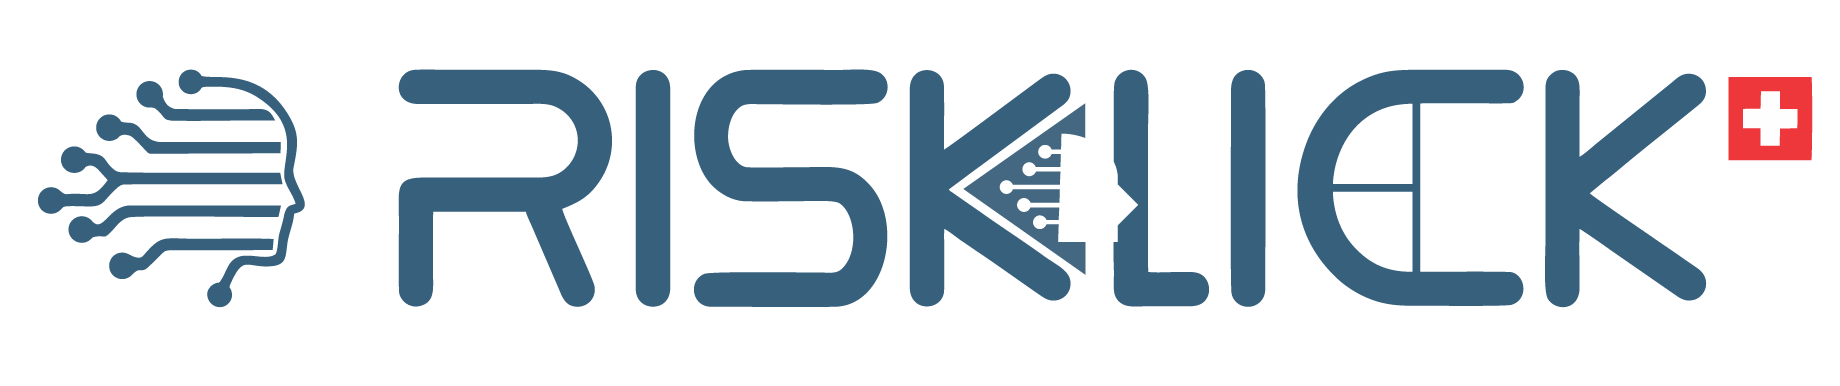 risklick logo